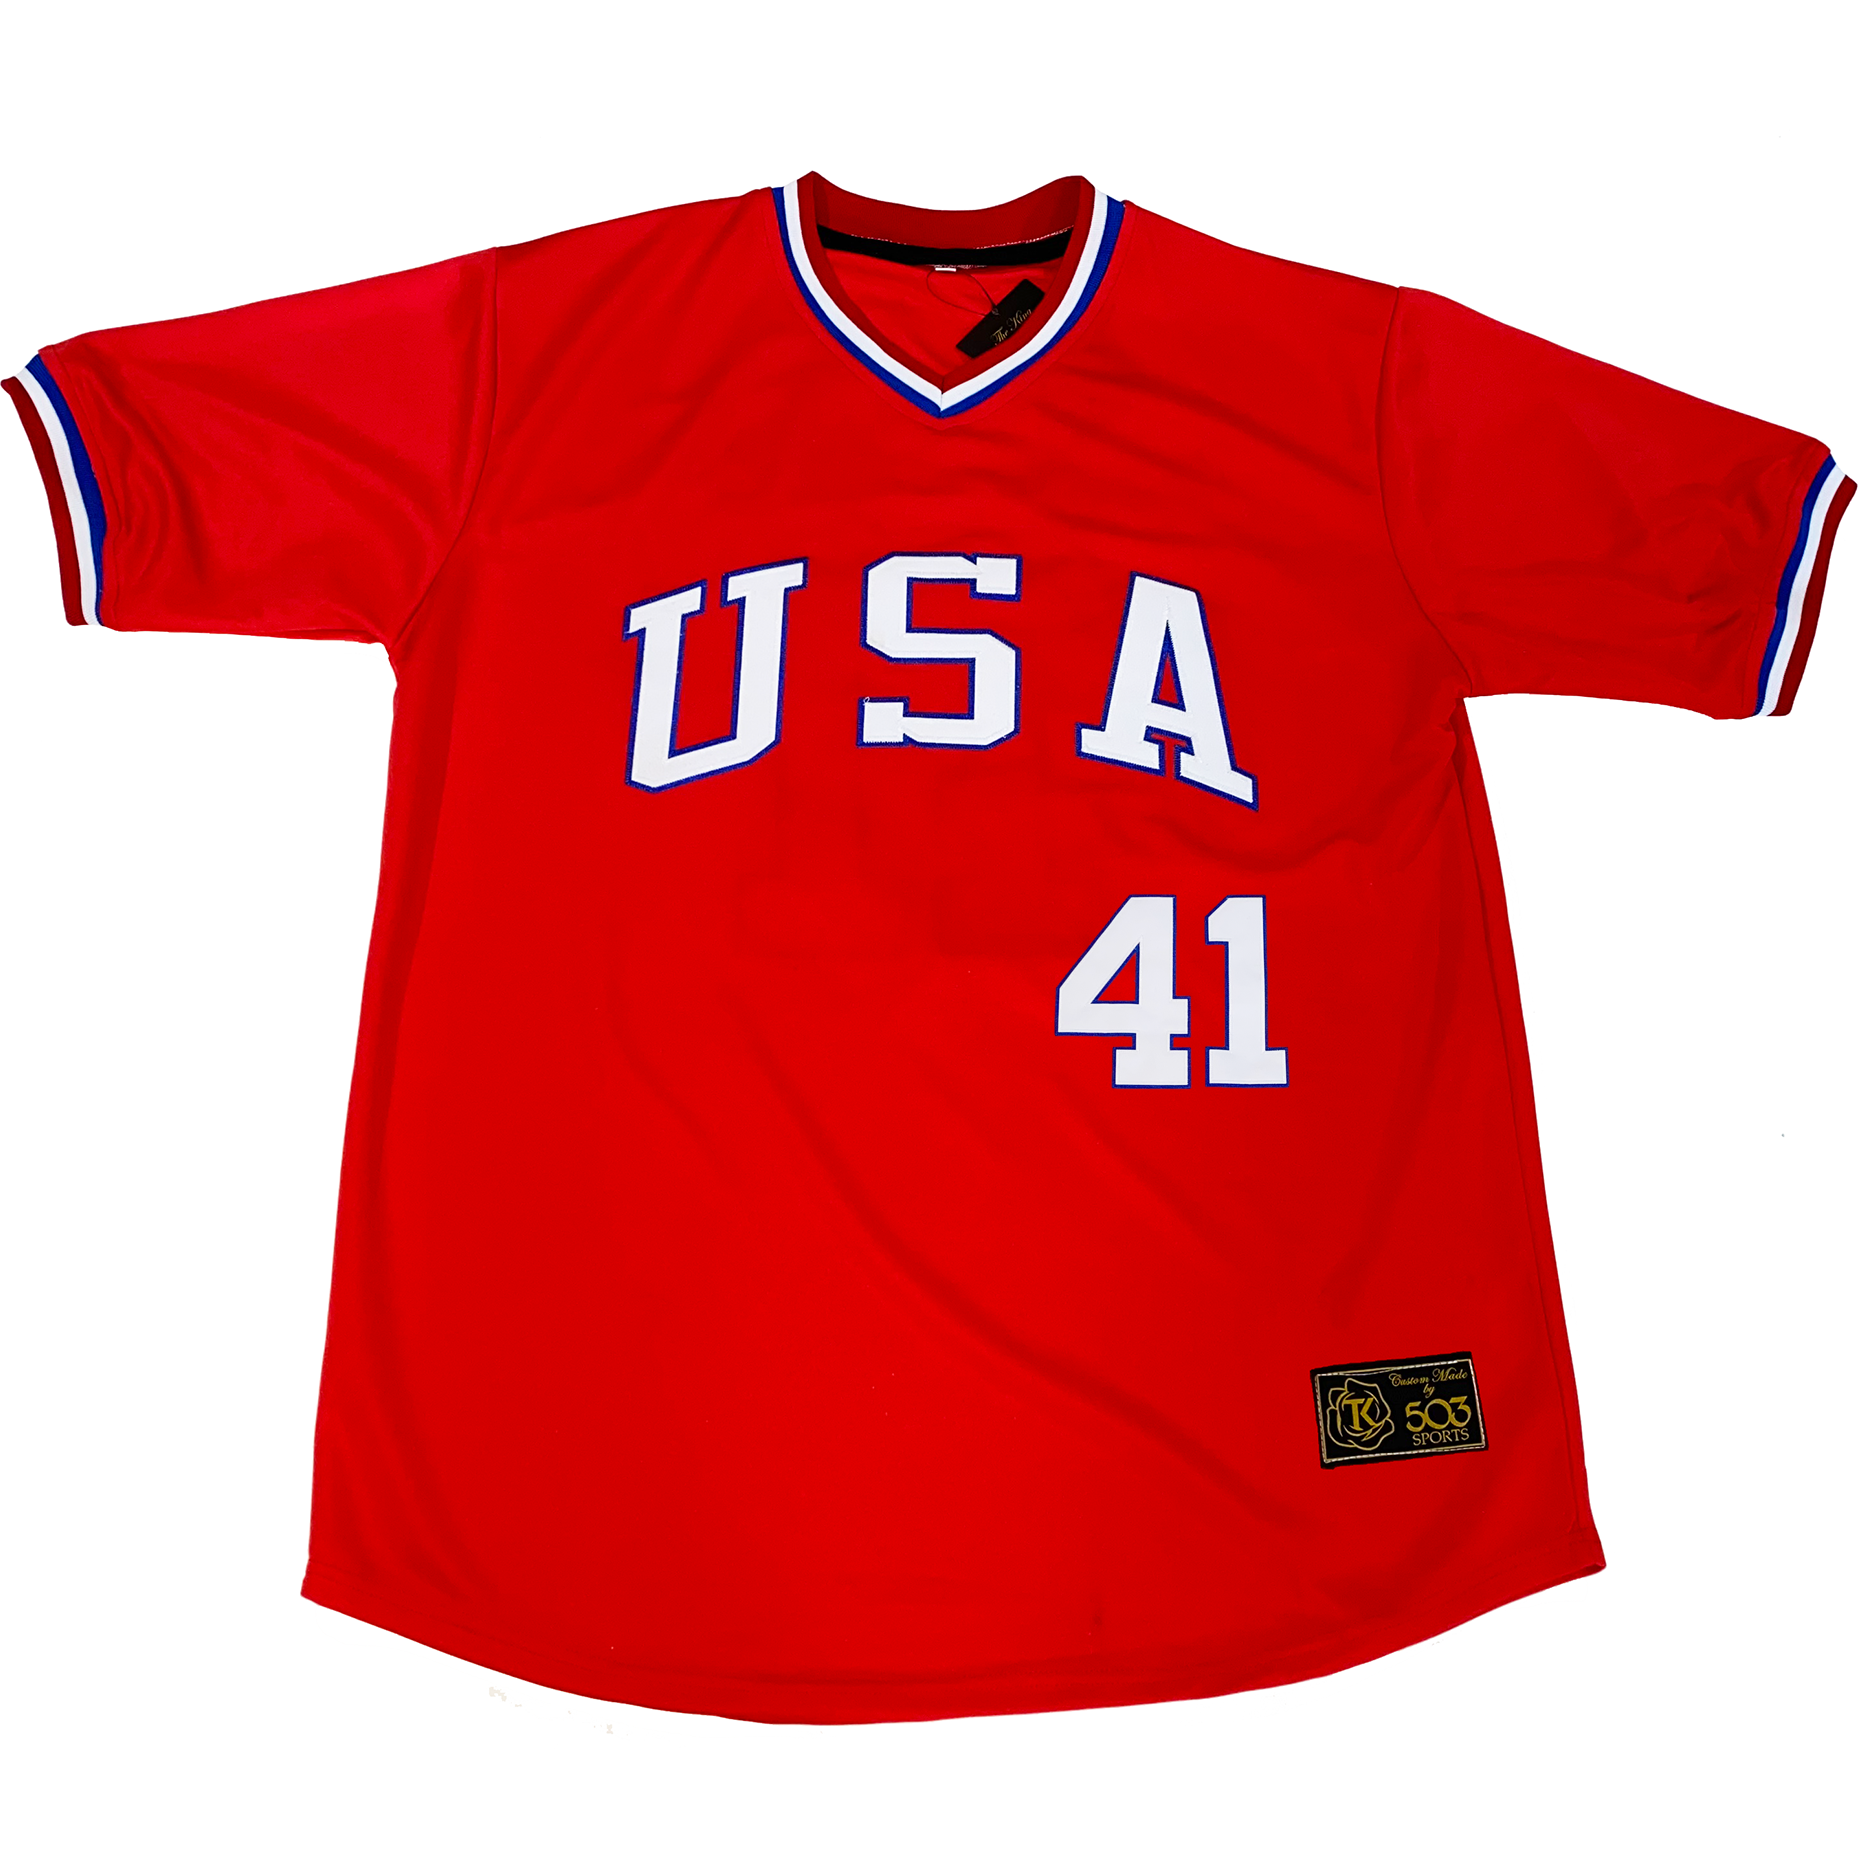  USA Red Baseball Jersey Stitched America Shirts Sports